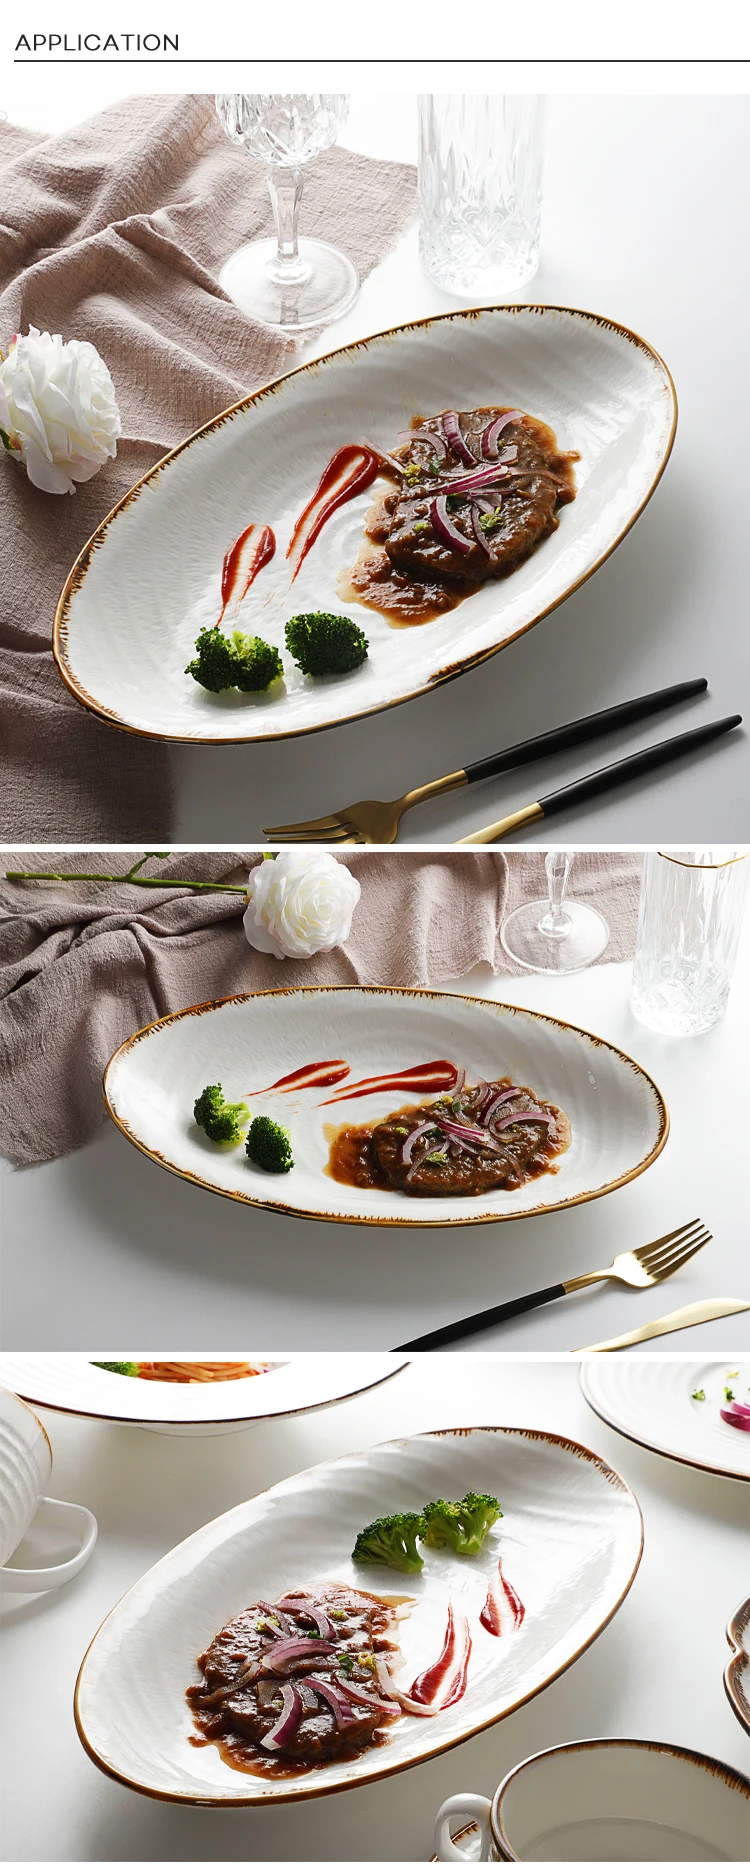 Restaurant Oval Plates Dinnerware, Restaurant Porcelain Oval Plate, Oval China Dishes Dinnerware&